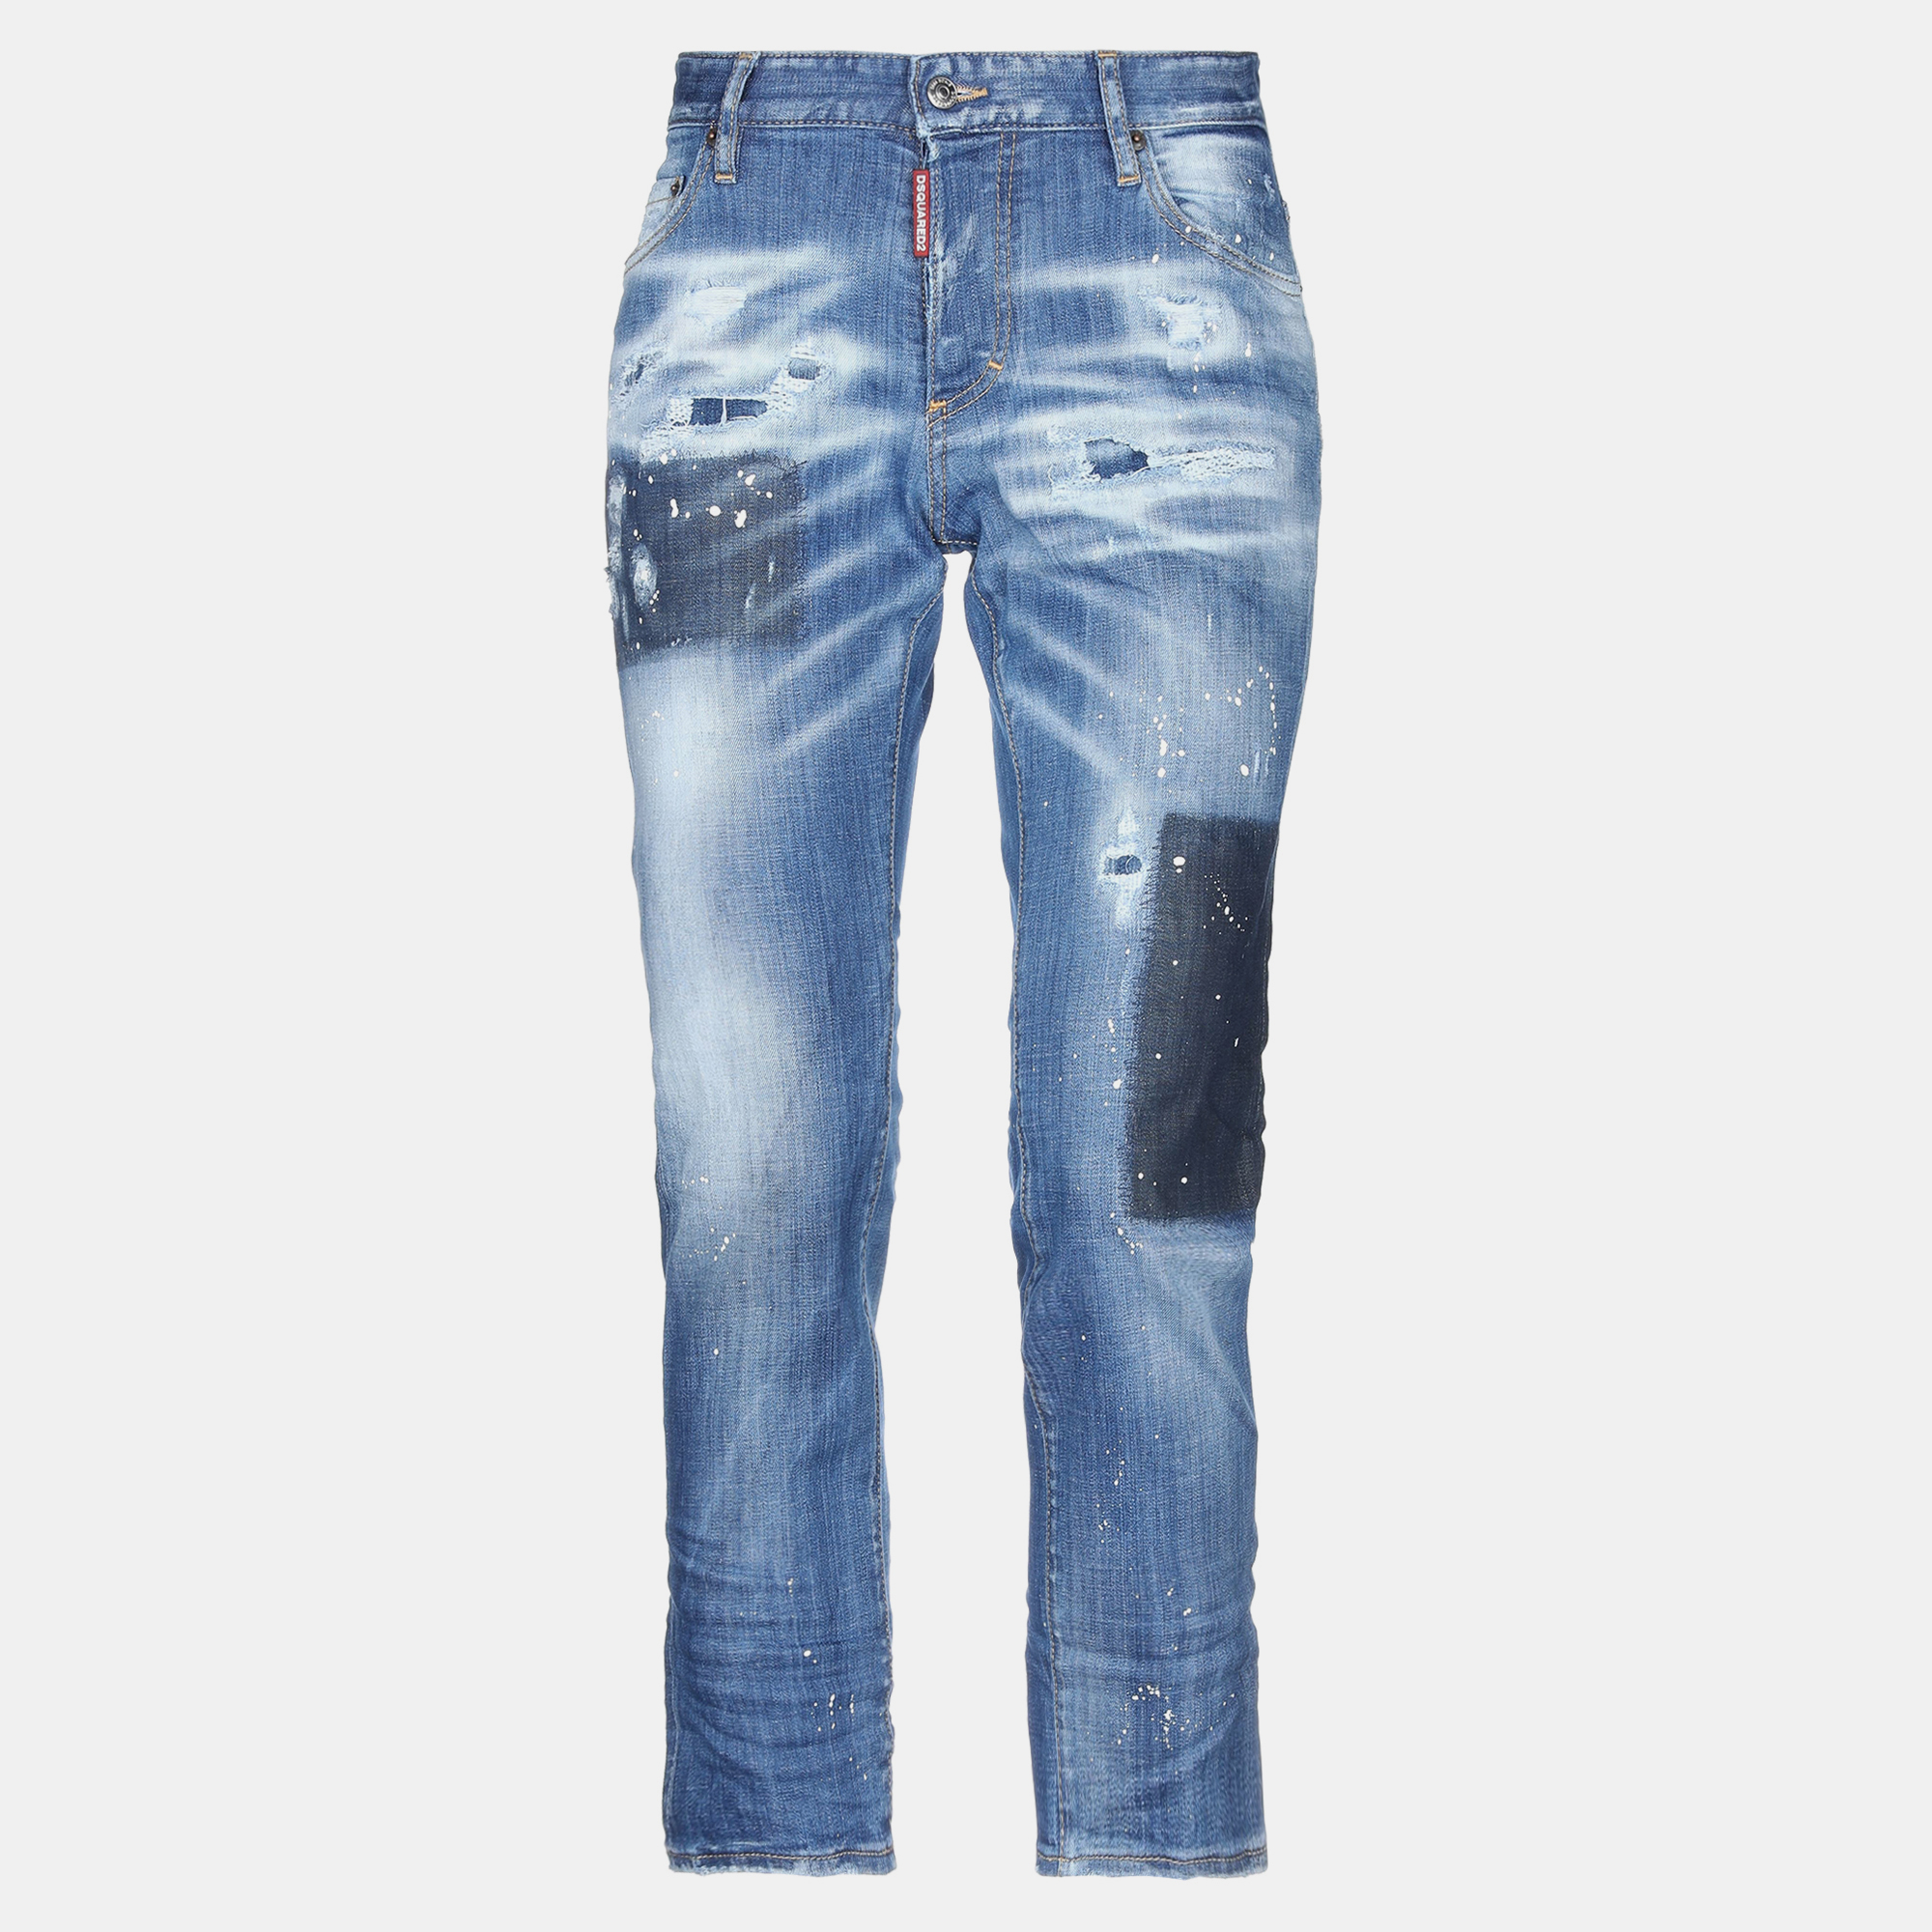 Dsquared2 cotton jeans 38